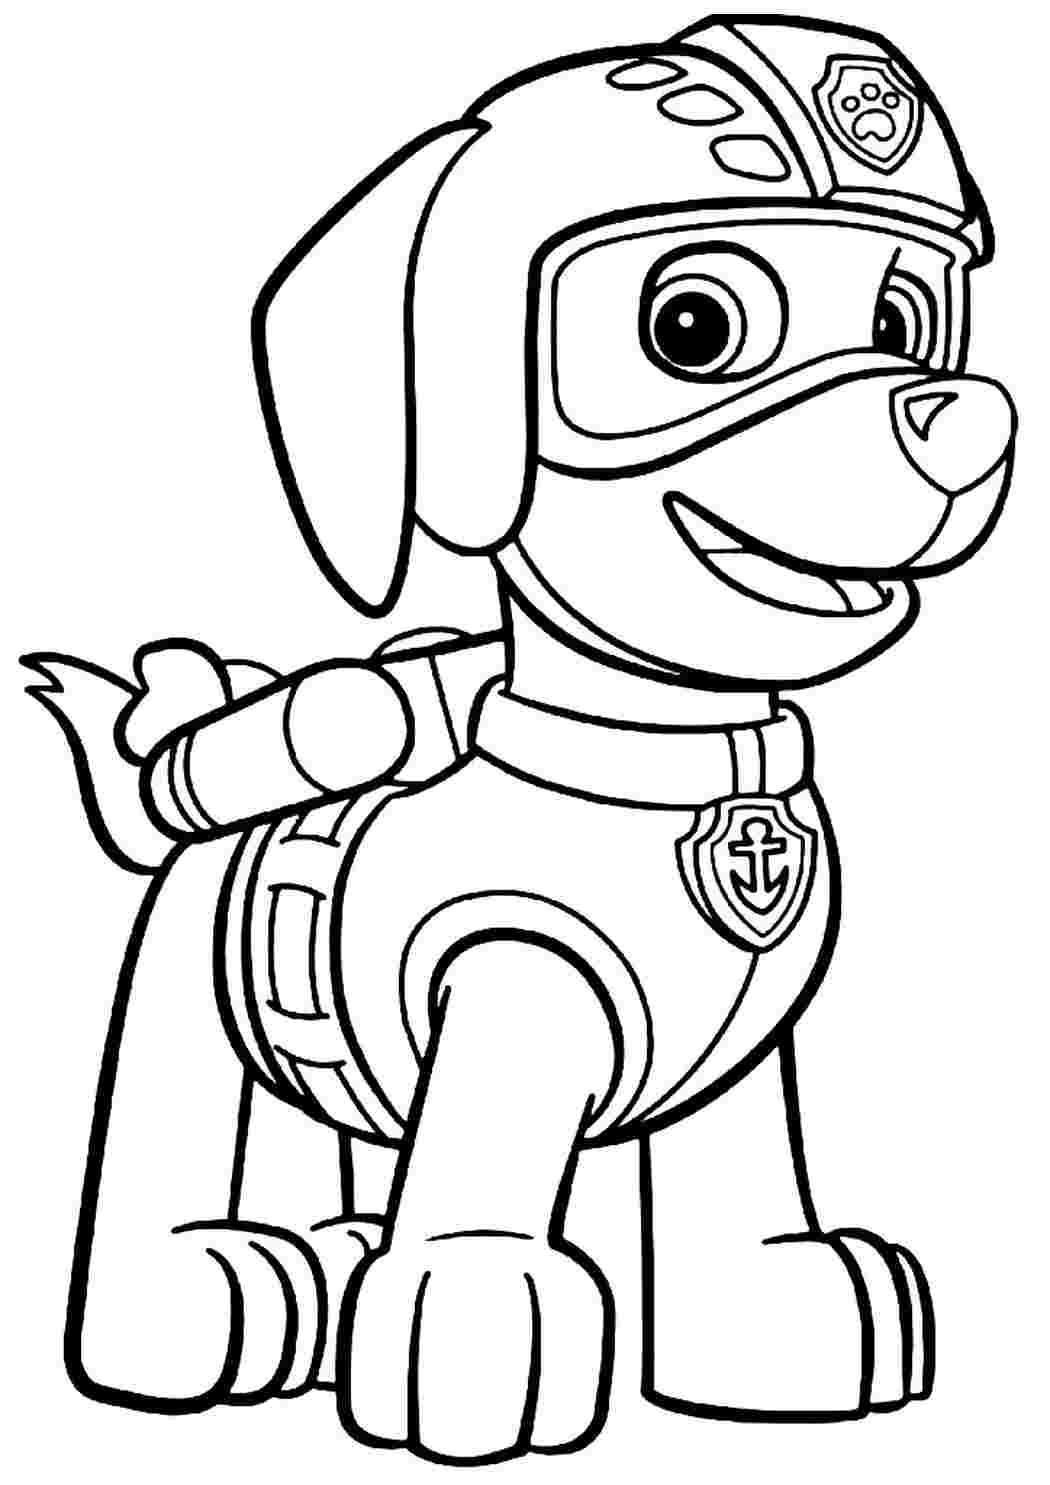 Раскраски Раскраска Раскраска щенок Зума — водный спасатель распечатать. Распечатать раскраски на сайте. Раскраска Раскраска щенок Зума — водный спасатель распечатать. Онлайн раскраски.